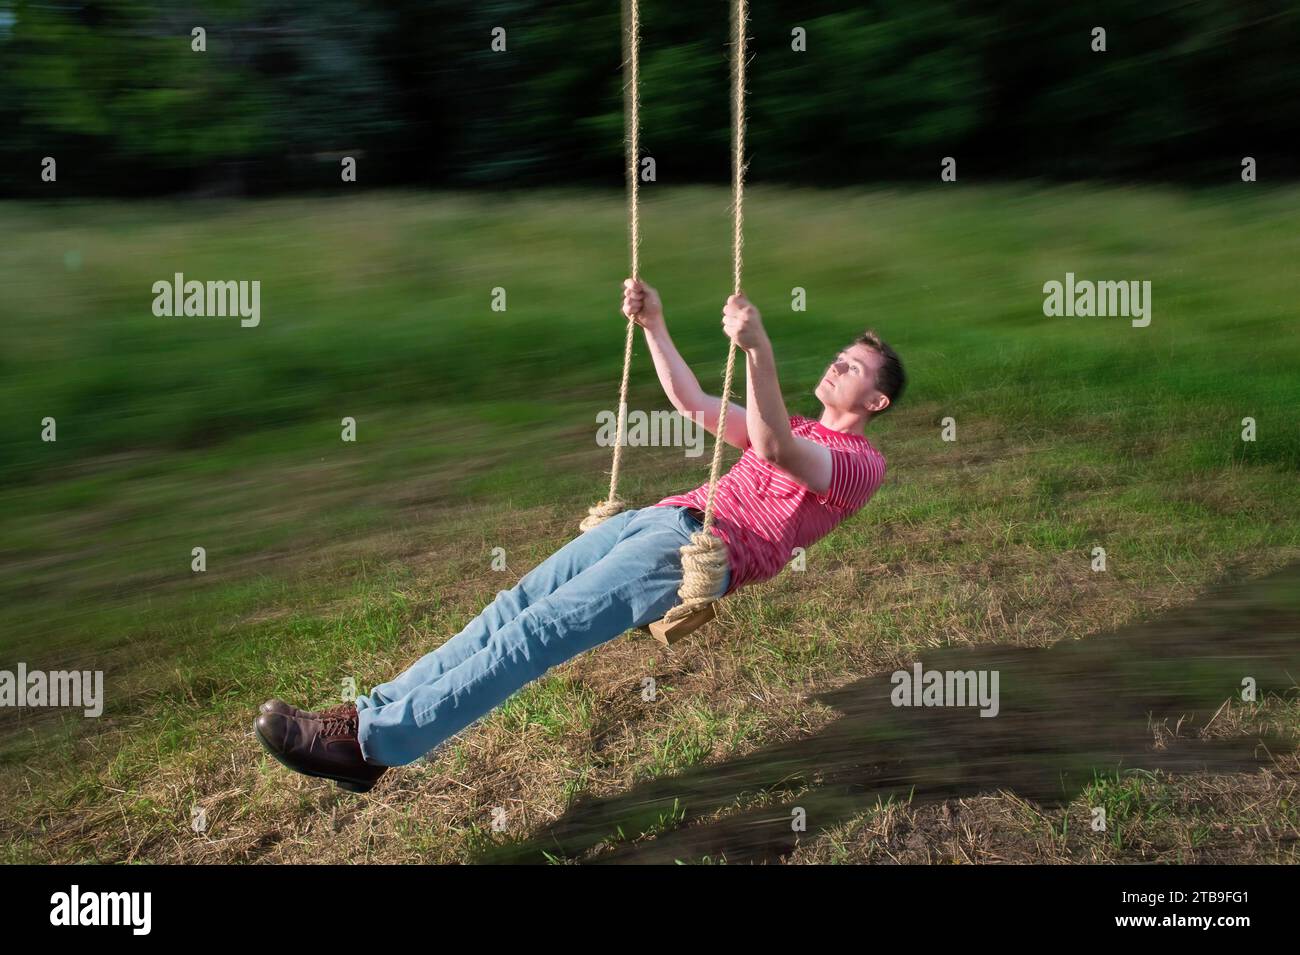 Der junge Mann wird während eines langsamen Shutters auf einer Seilschaukel gezeigt; Bennet, Nebraska, Vereinigte Staaten von Amerika Stockfoto